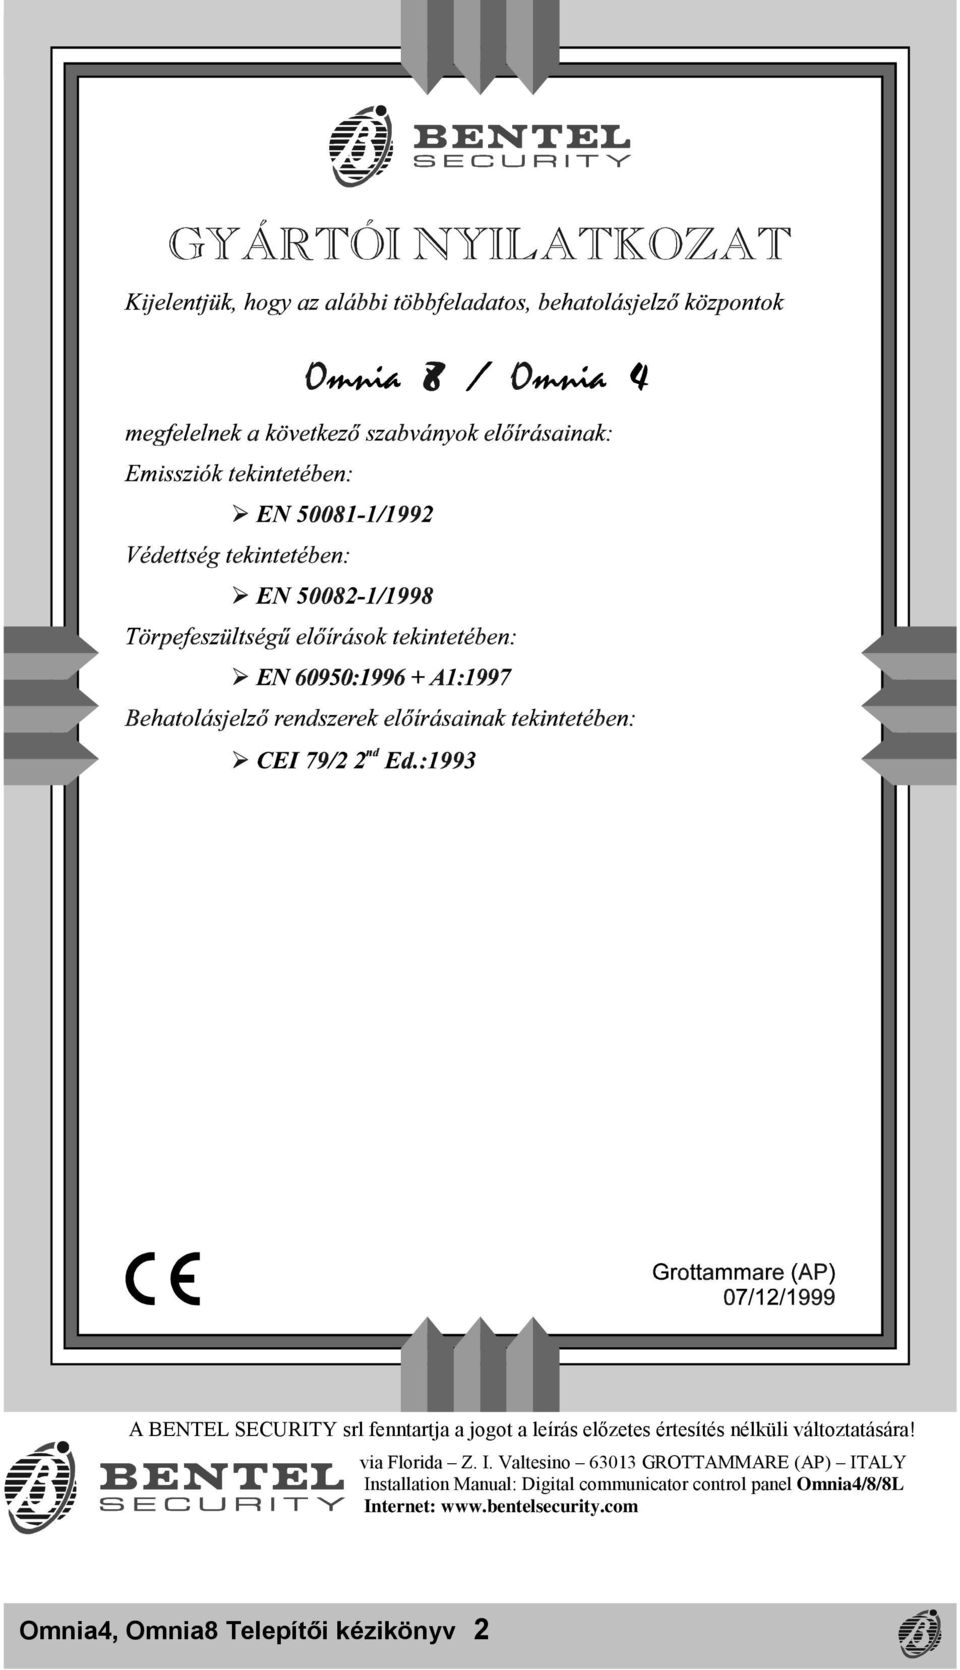 Valtesino 63013 GROTTAMMARE (AP) ITALY Installation Manual: Digital